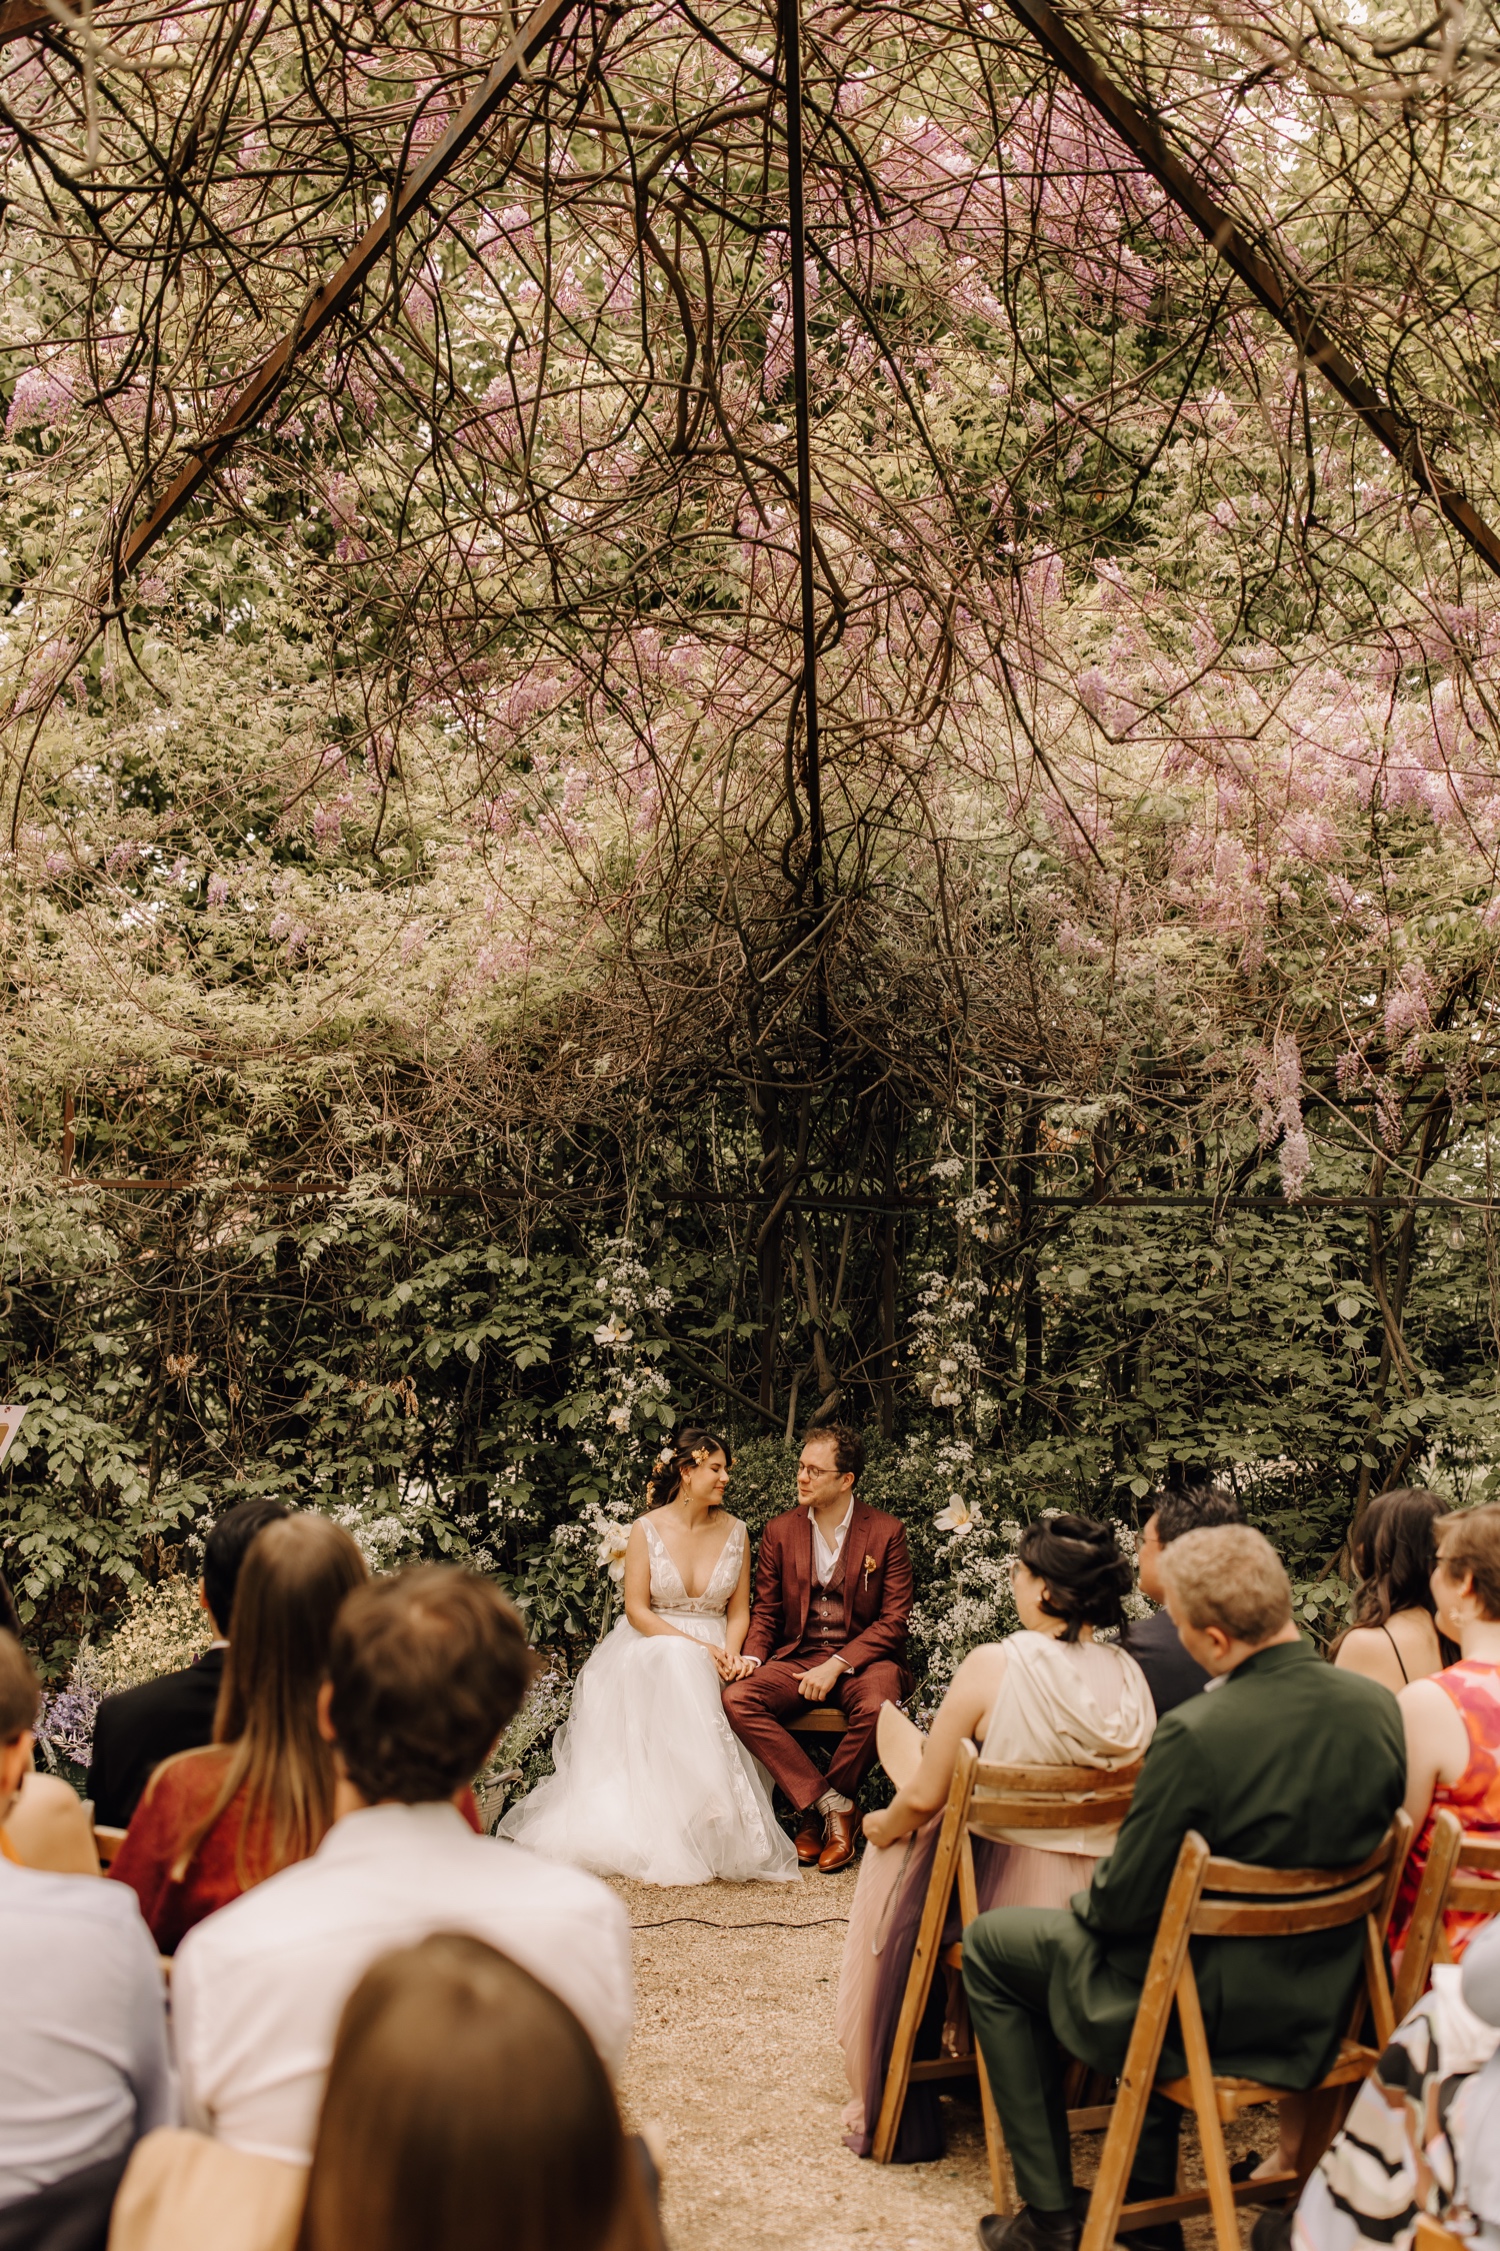 Huwelijksfotograaf Limburg - overzicht bruid en bruidegom tijdens ceremonie